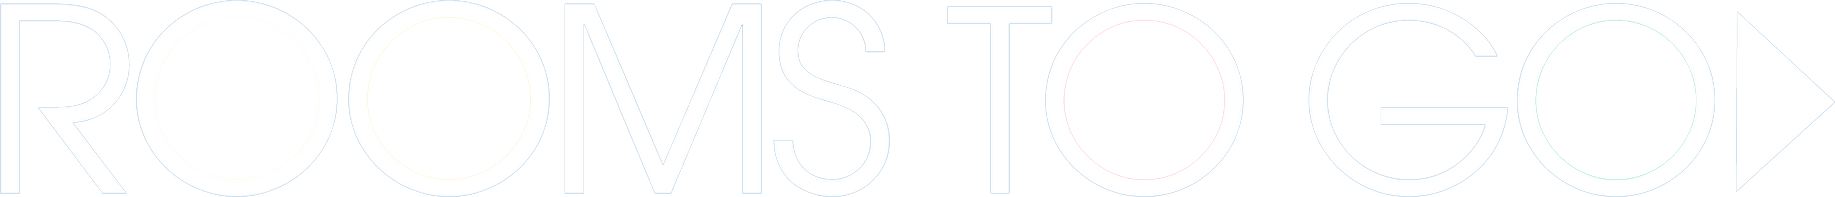 Rtg casestudy logo r6vzaym